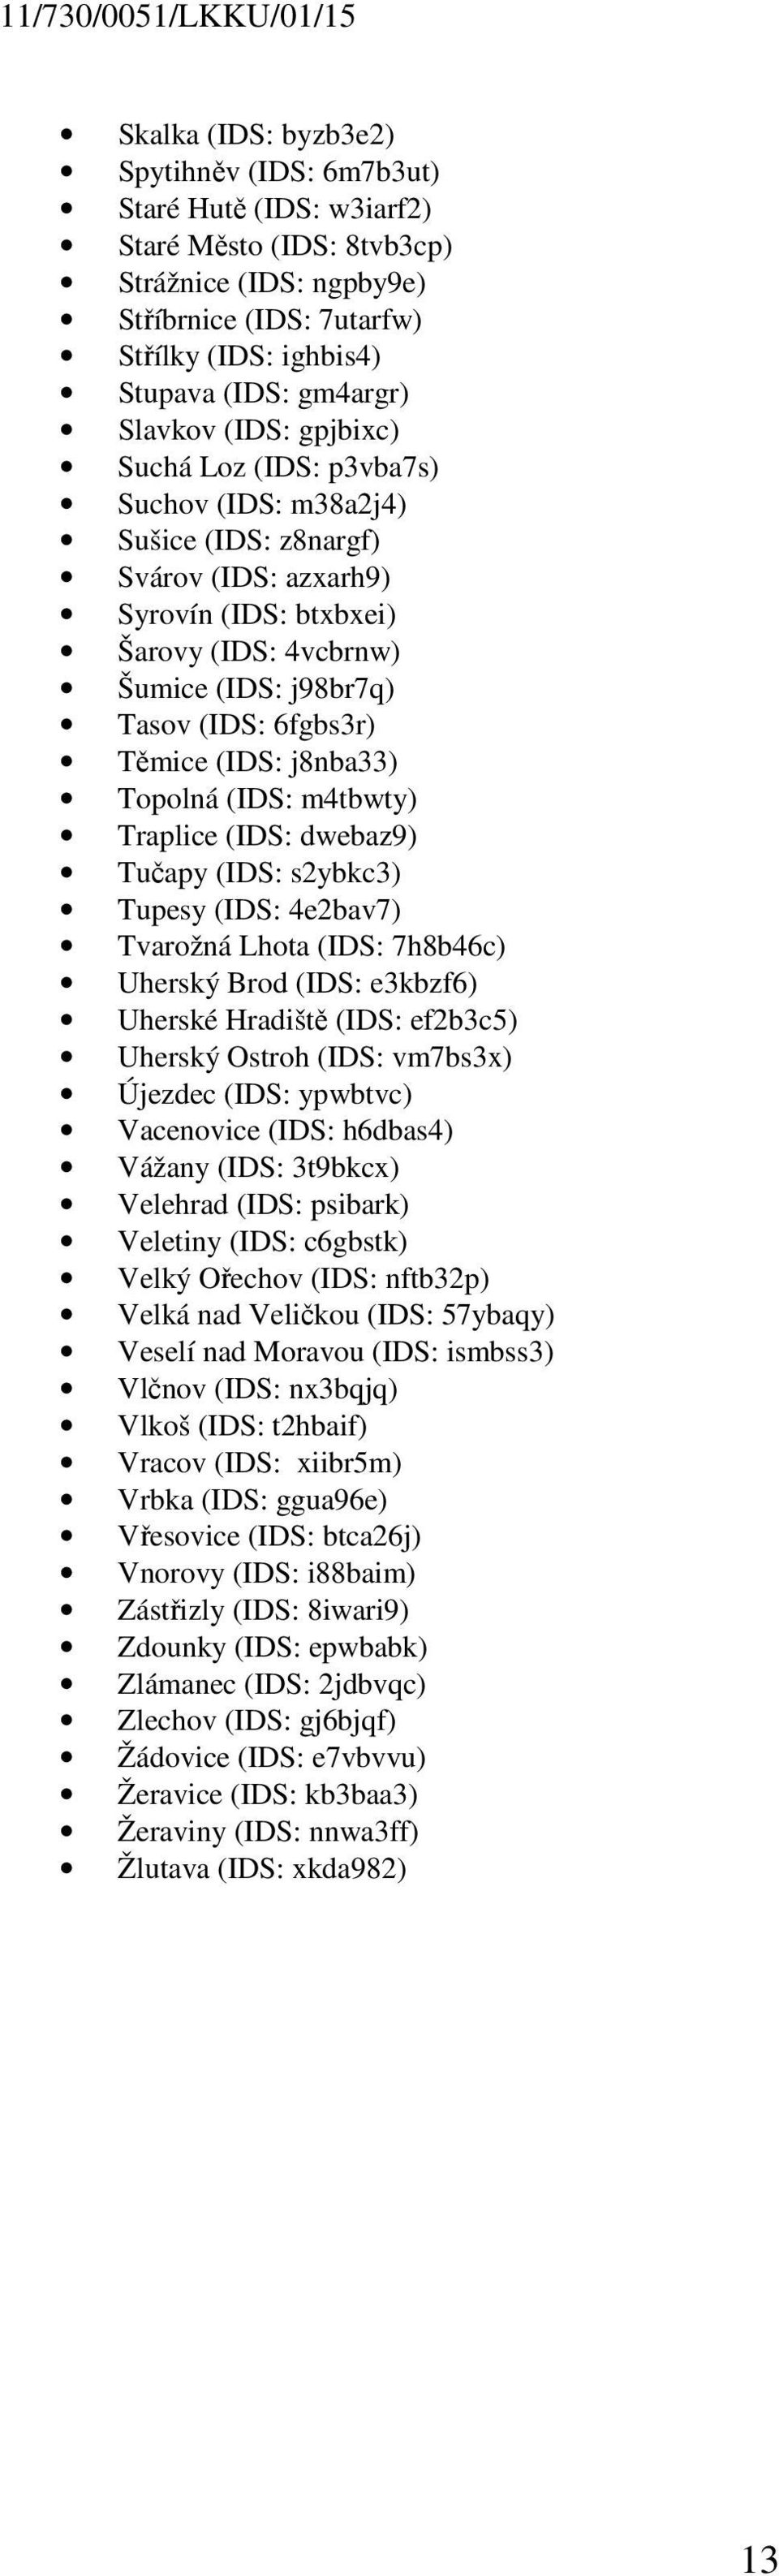 6fgbs3r) Těmice (IDS: j8nba33) Topolná (IDS: m4tbwty) Traplice (IDS: dwebaz9) Tučapy (IDS: s2ybkc3) Tupesy (IDS: 4e2bav7) Tvarožná Lhota (IDS: 7h8b46c) Uherský Brod (IDS: e3kbzf6) Uherské Hradiště